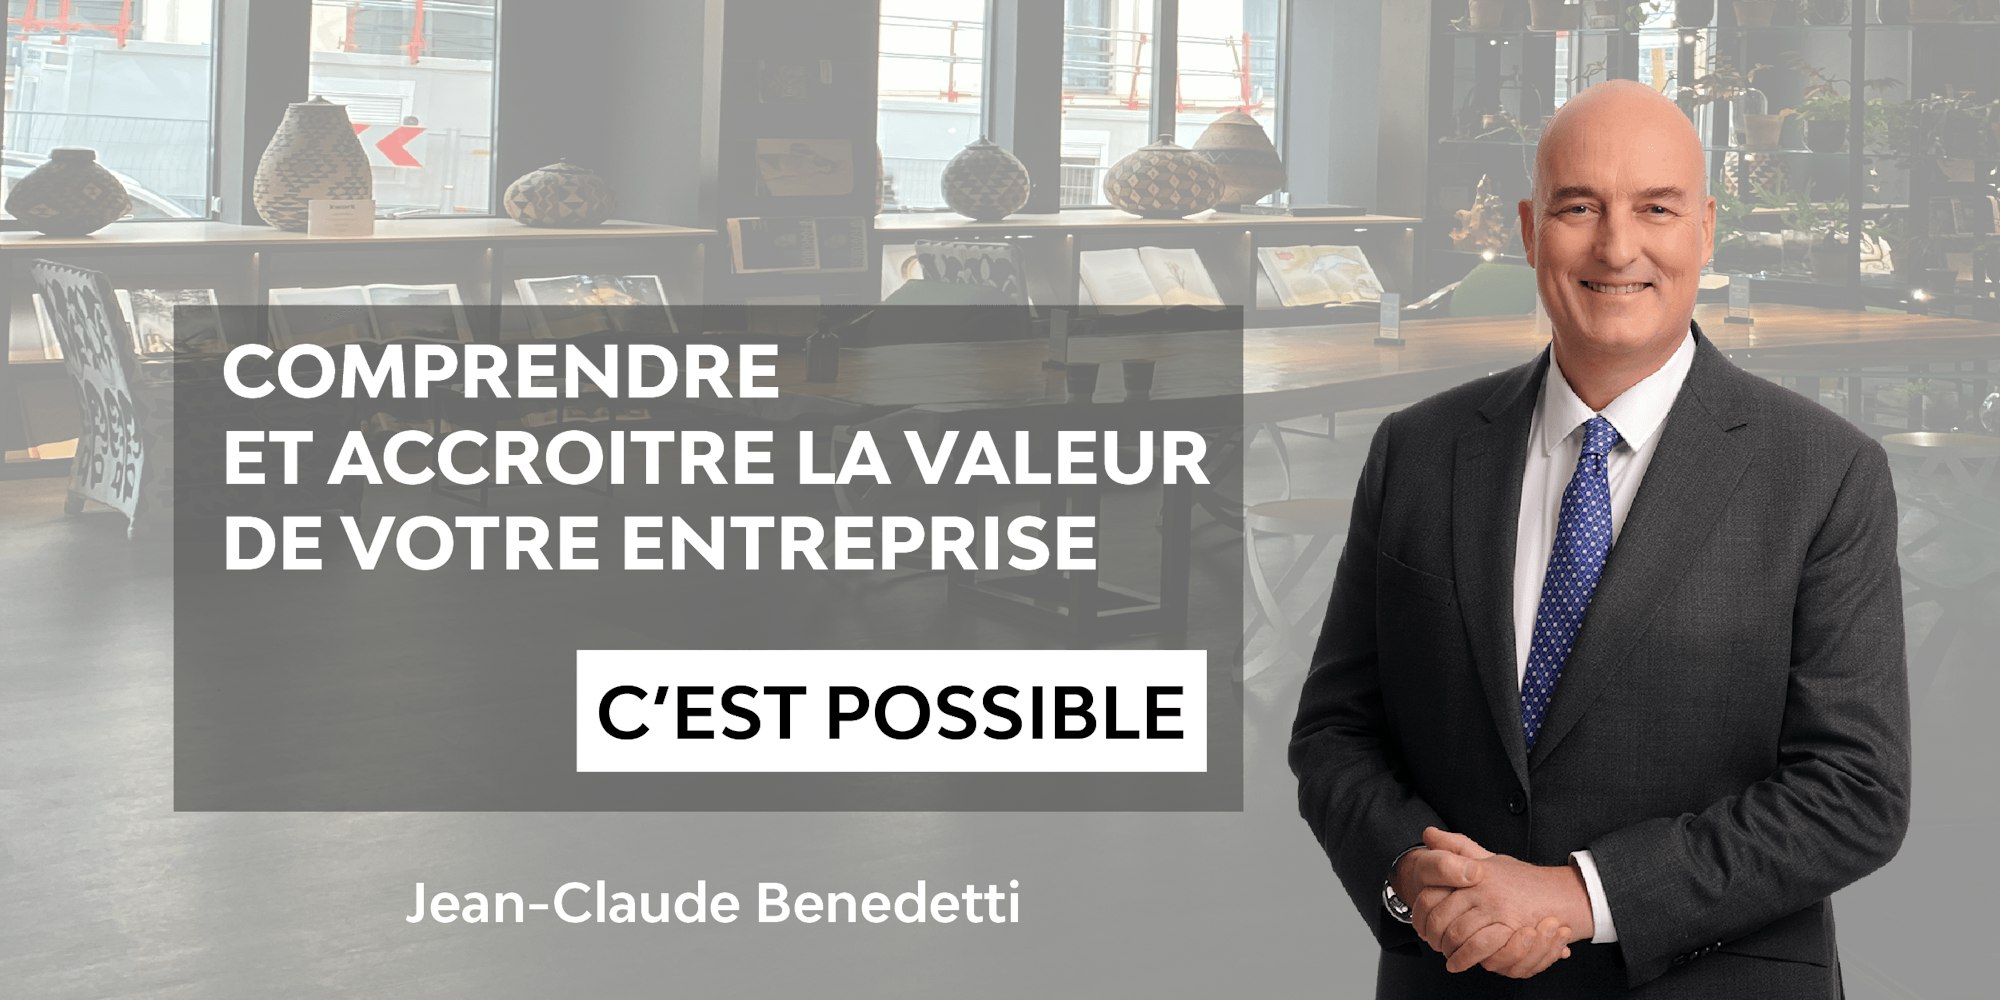 Comprendre et accroitre la valeur de votre entreprise c'est possible par Jean-Claude Benedetti